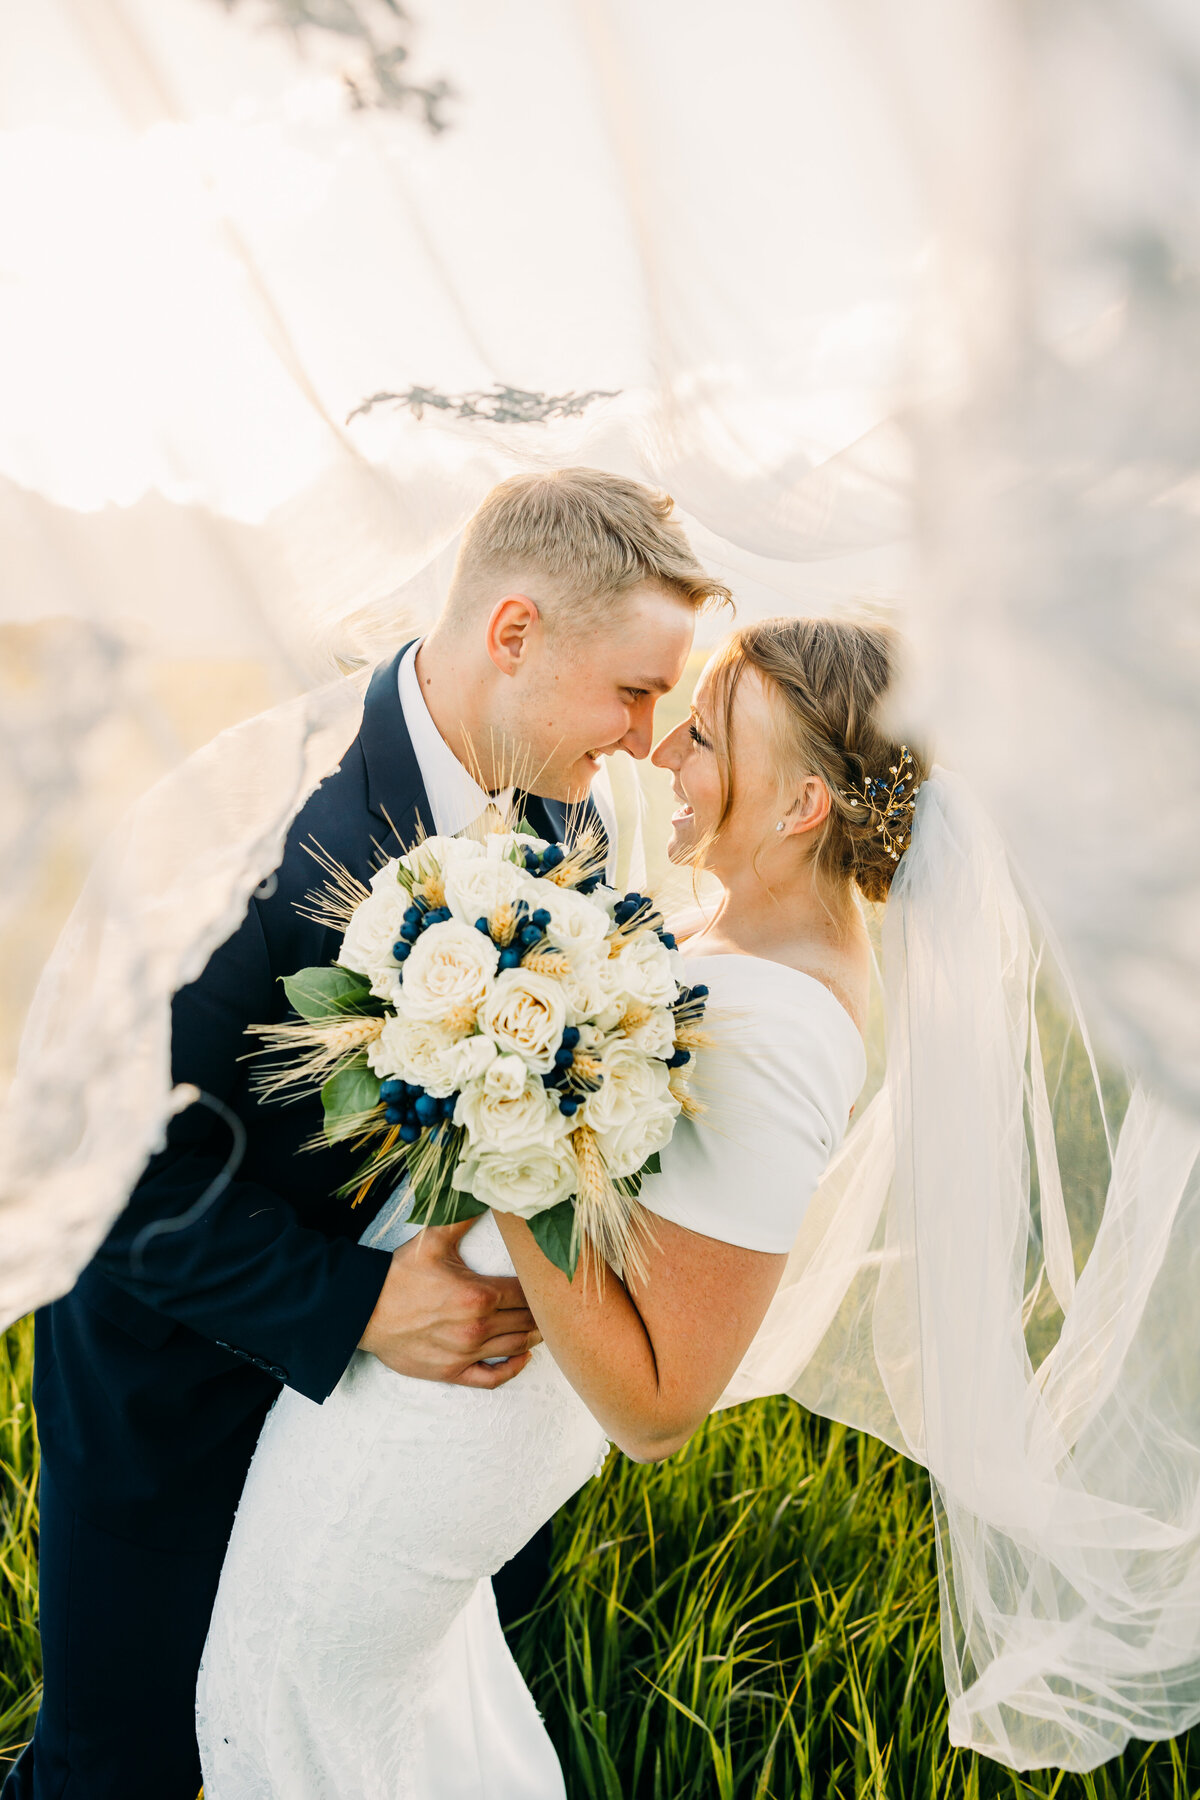 Idaho Falls wedding and engagement photographer